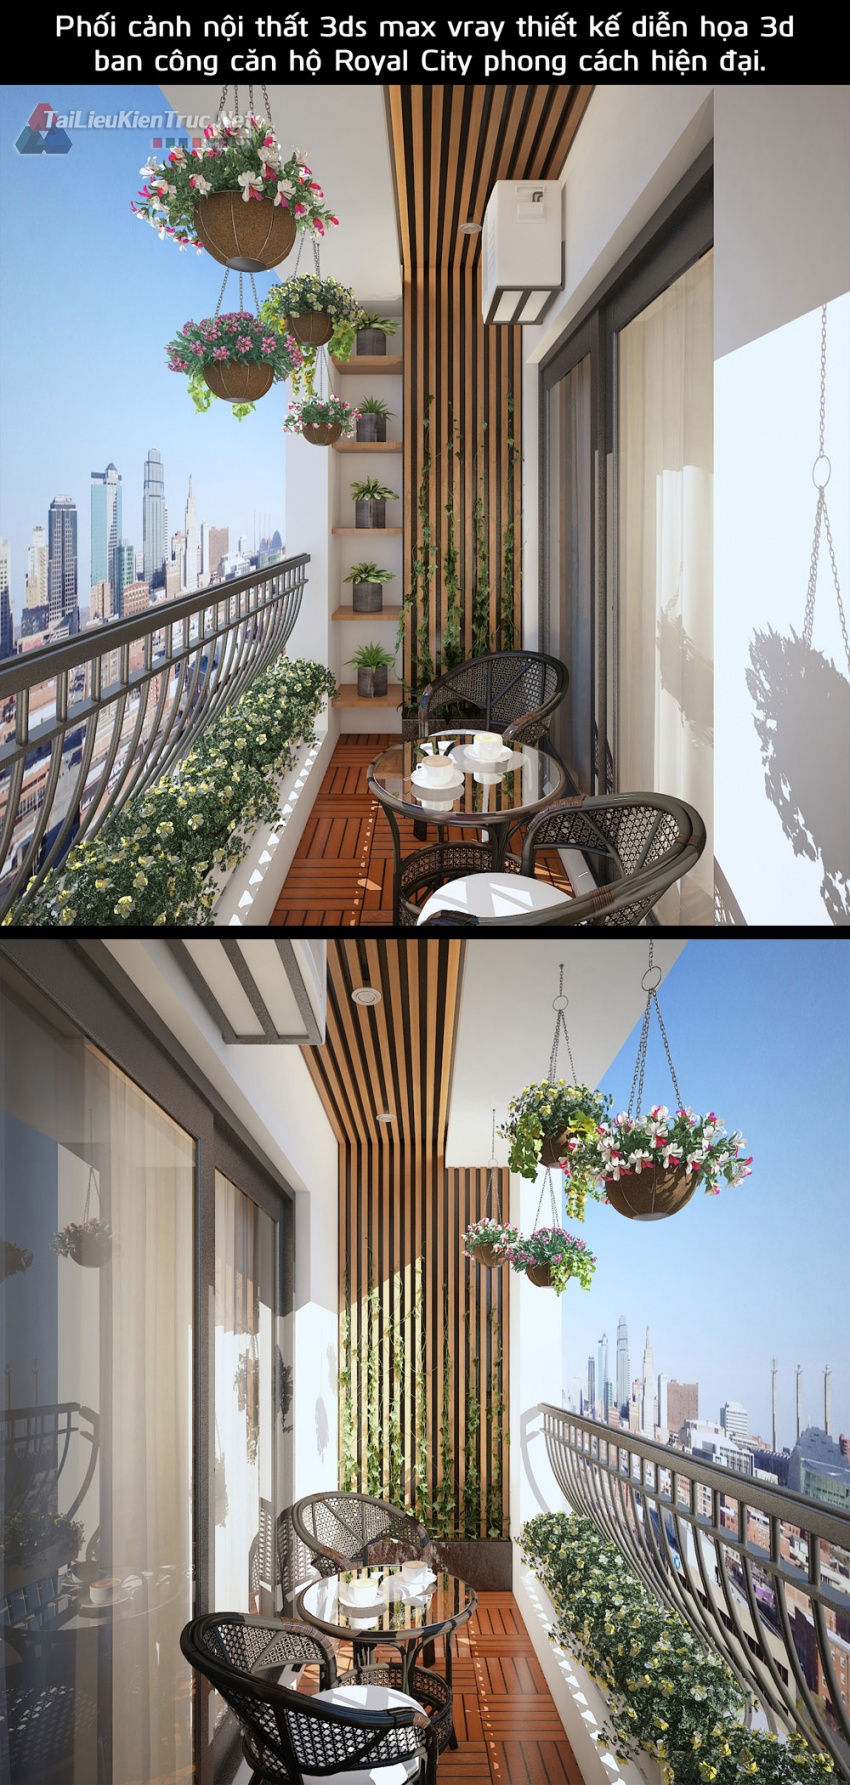 Phối cảnh nội thất 3ds max vray thiết kế diễn họa 3d nội thất ban công căn hộ Royal City phong cách hiện đại